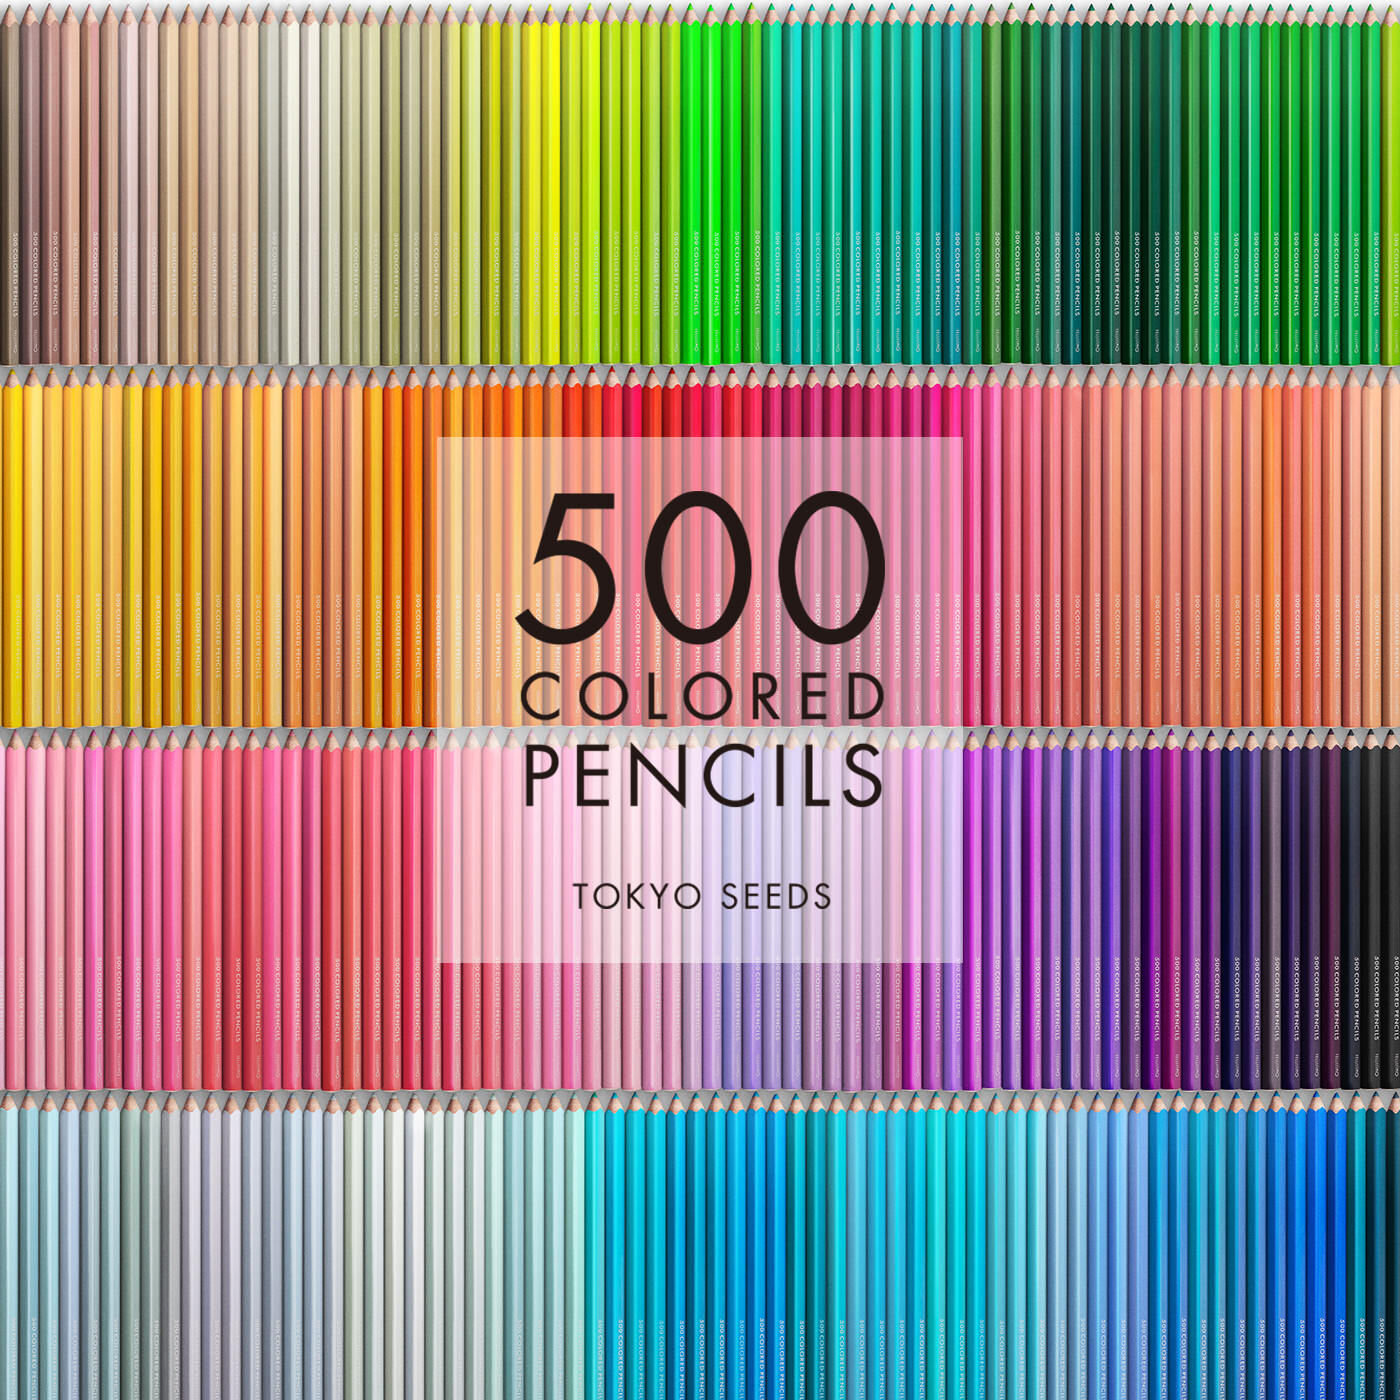 Real Stock|【266/500 MINT MOJITO】500色の色えんぴつ TOKYO SEEDS|1992年、世界初の「500色」という膨大な色数の色えんぴつが誕生して以来、その販売数は発売当初から合わせると、世界55ヵ国10万セット以上。今回、メイド・イン・ジャパンにこだわり、すべてが新しく生まれ変わって登場しました。